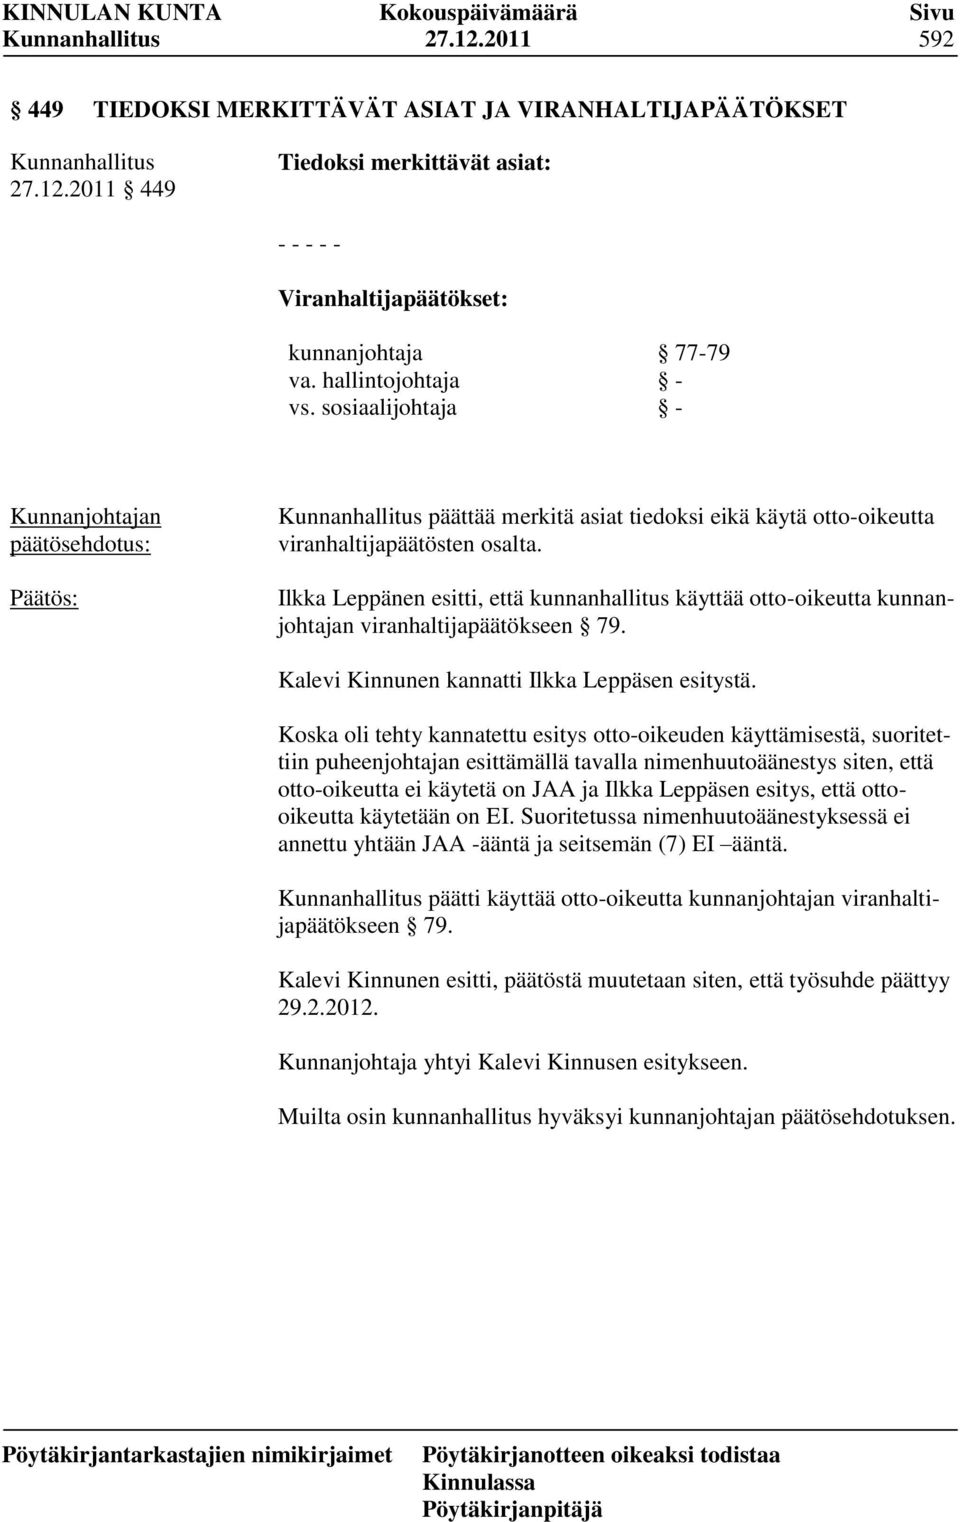 Ilkka Leppänen esitti, että kunnanhallitus käyttää otto-oikeutta kunnanjohtajan viranhaltijapäätökseen 79. Kalevi Kinnunen kannatti Ilkka Leppäsen esitystä.